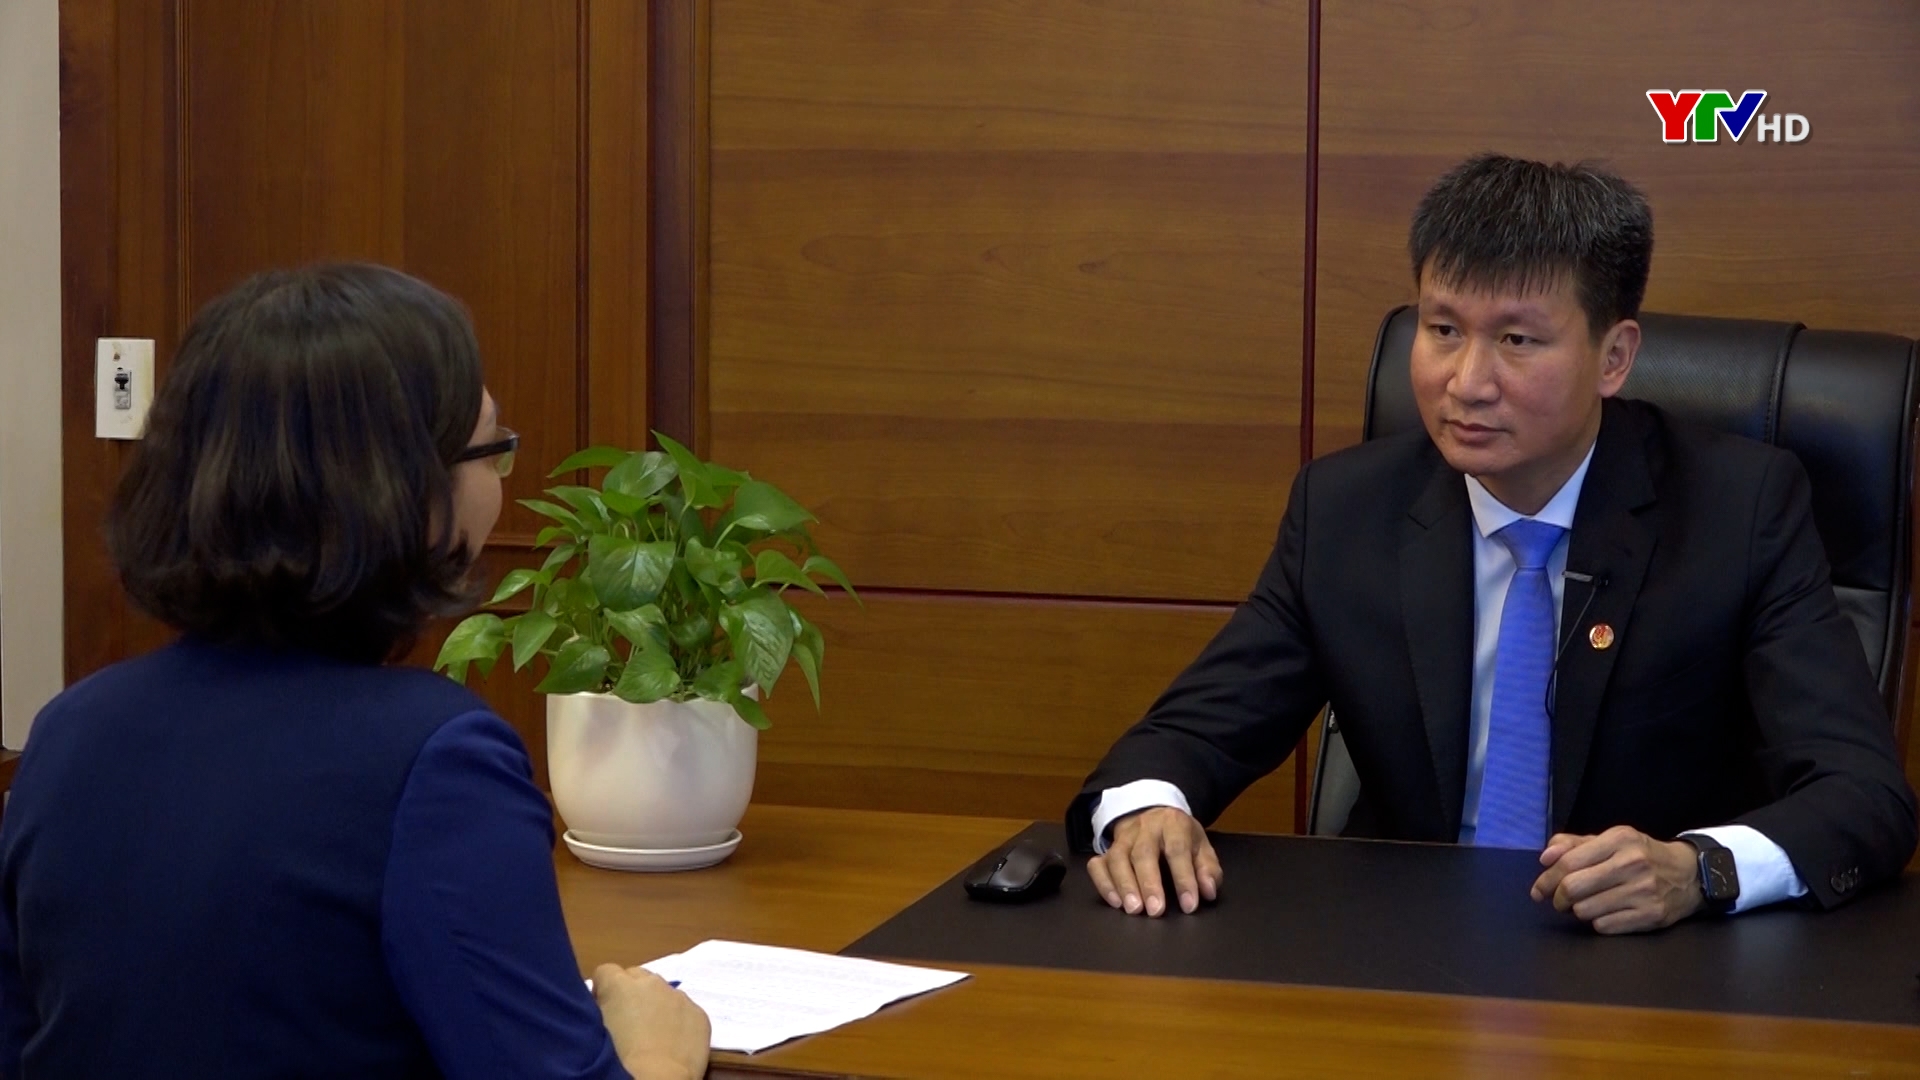 Phỏng vấn ông Trần Huy Tuấn – Chủ tịch UBND tỉnh trước thềm Hội nghị gặp gỡ Nhật Bản năm 2020